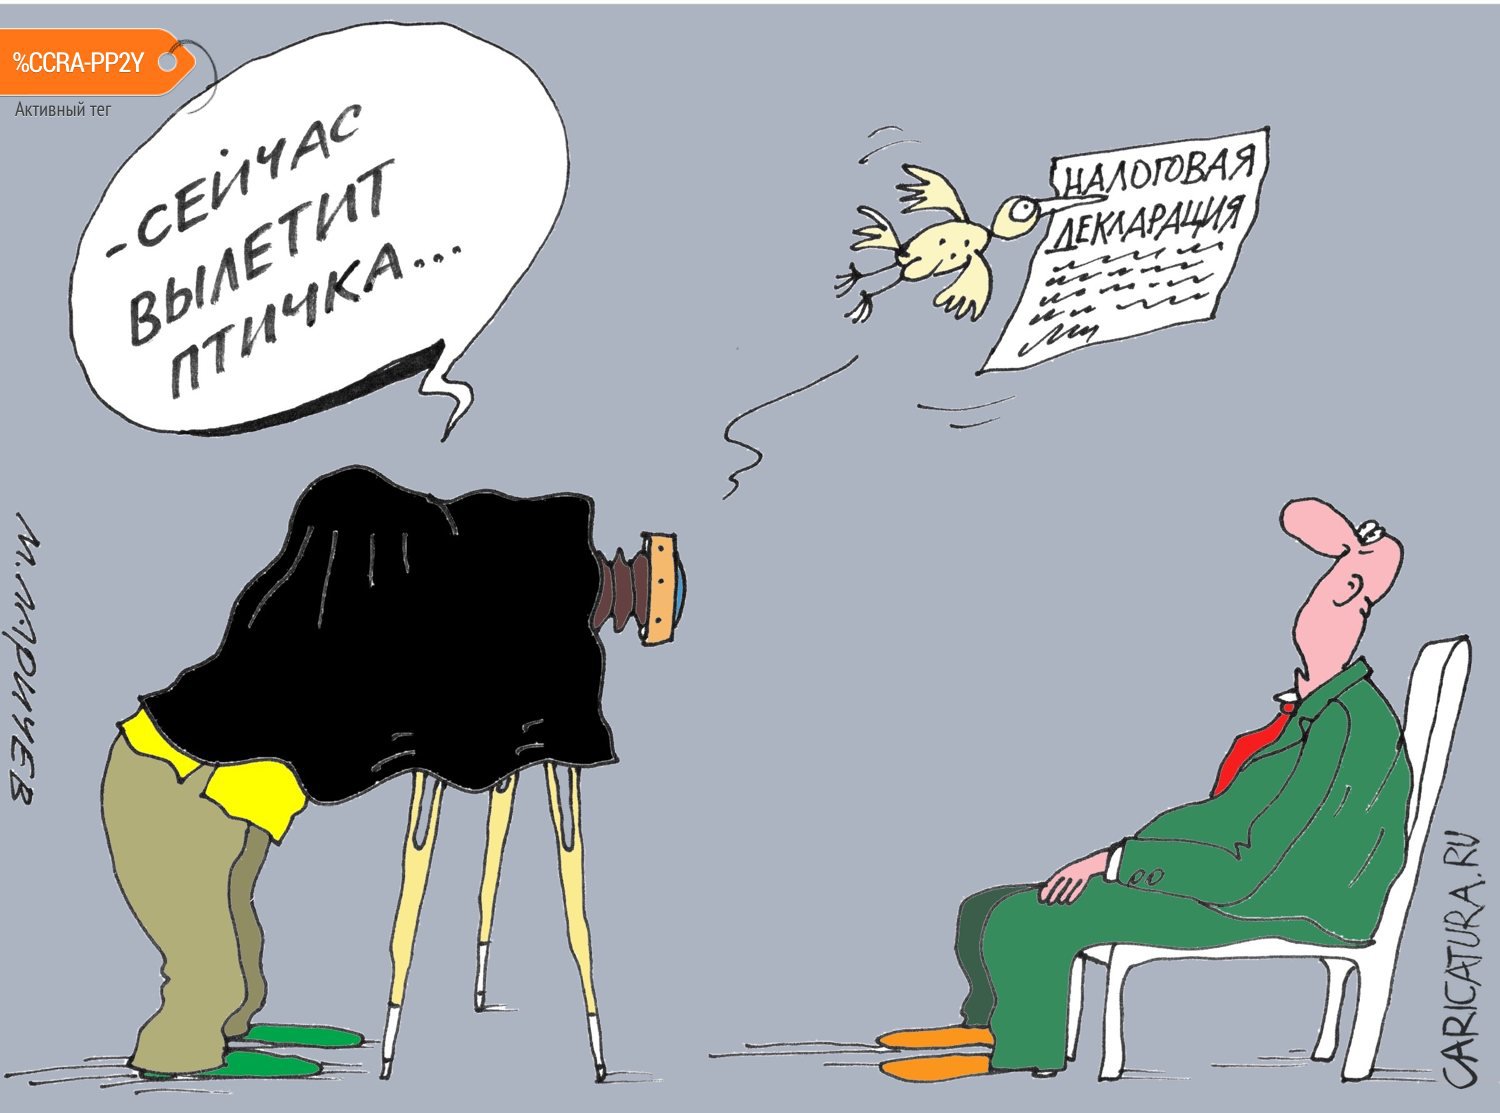 Карикатура "К вопросу о самозанятых", Михаил Ларичев